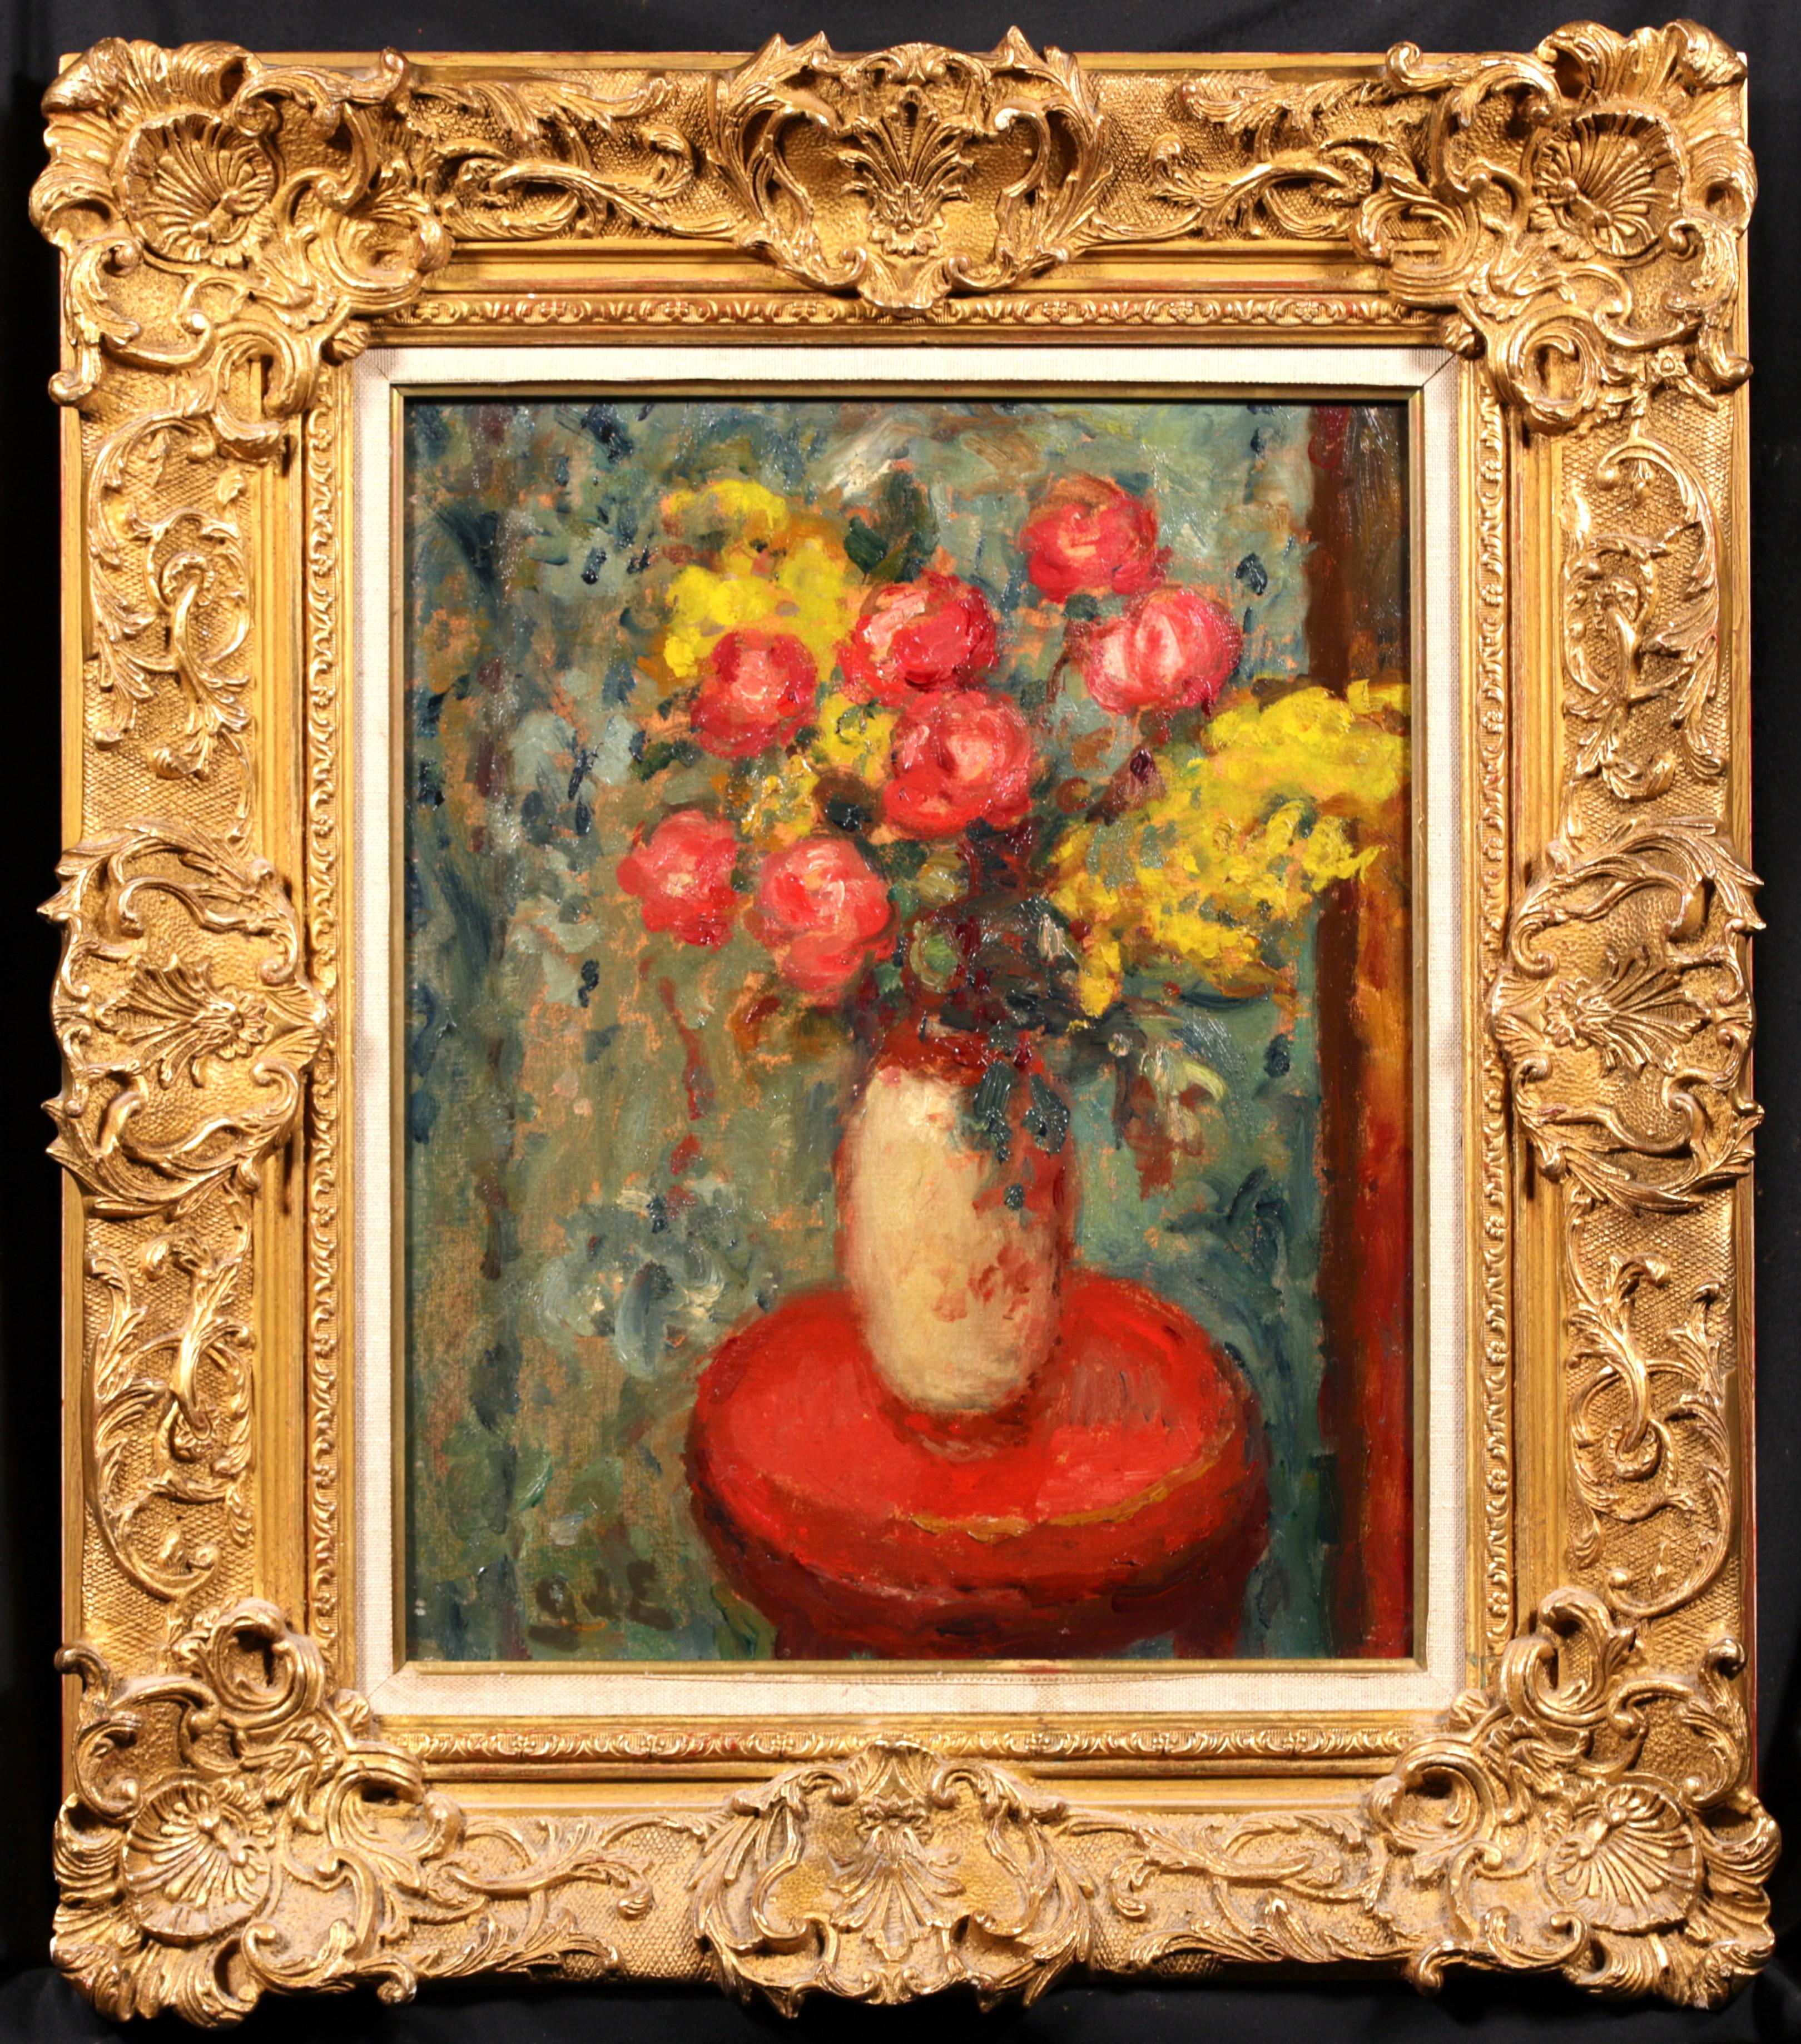 Nature morte signée, huile sur toile vers 1920 par le peintre post-impressionniste français Georges D'Espagnat. L'œuvre représente un vase en céramique posé sur un étalage en bois rempli de pivoines roses et de fleurs jaunes. Une belle pièce dans la